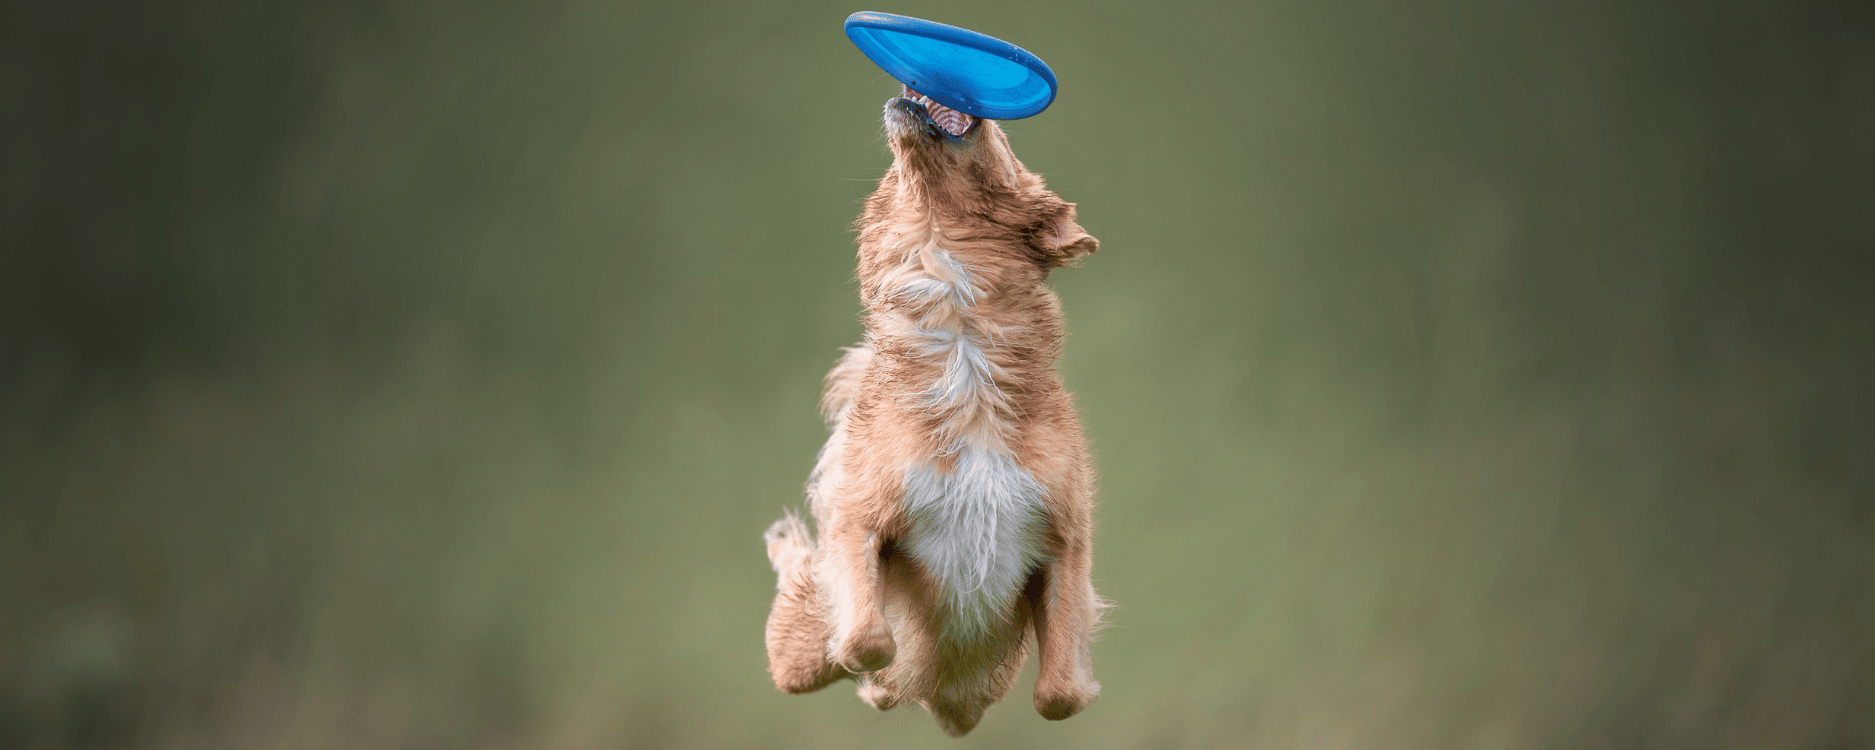 Hund fängt Frisbee in der Luft